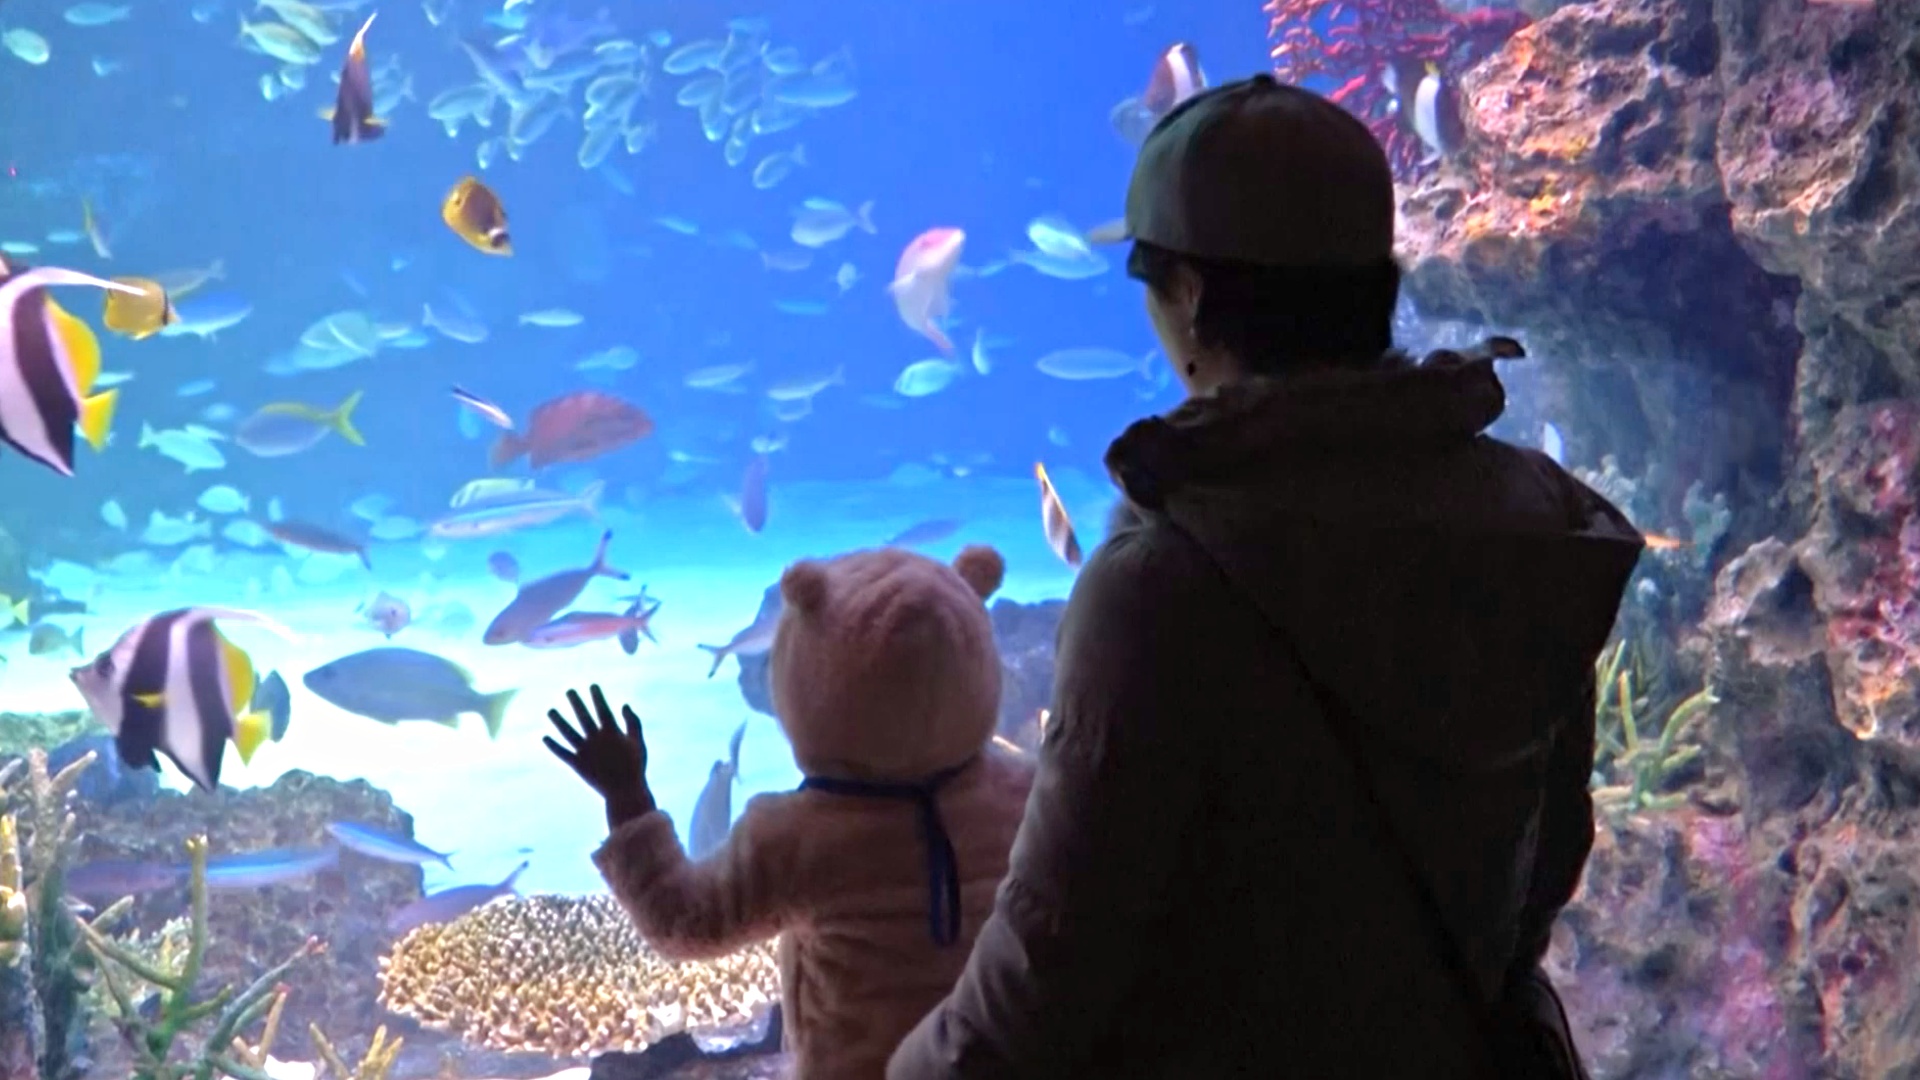 Прикоснуться к глубоководным созданиям можно в океанариуме в Токио